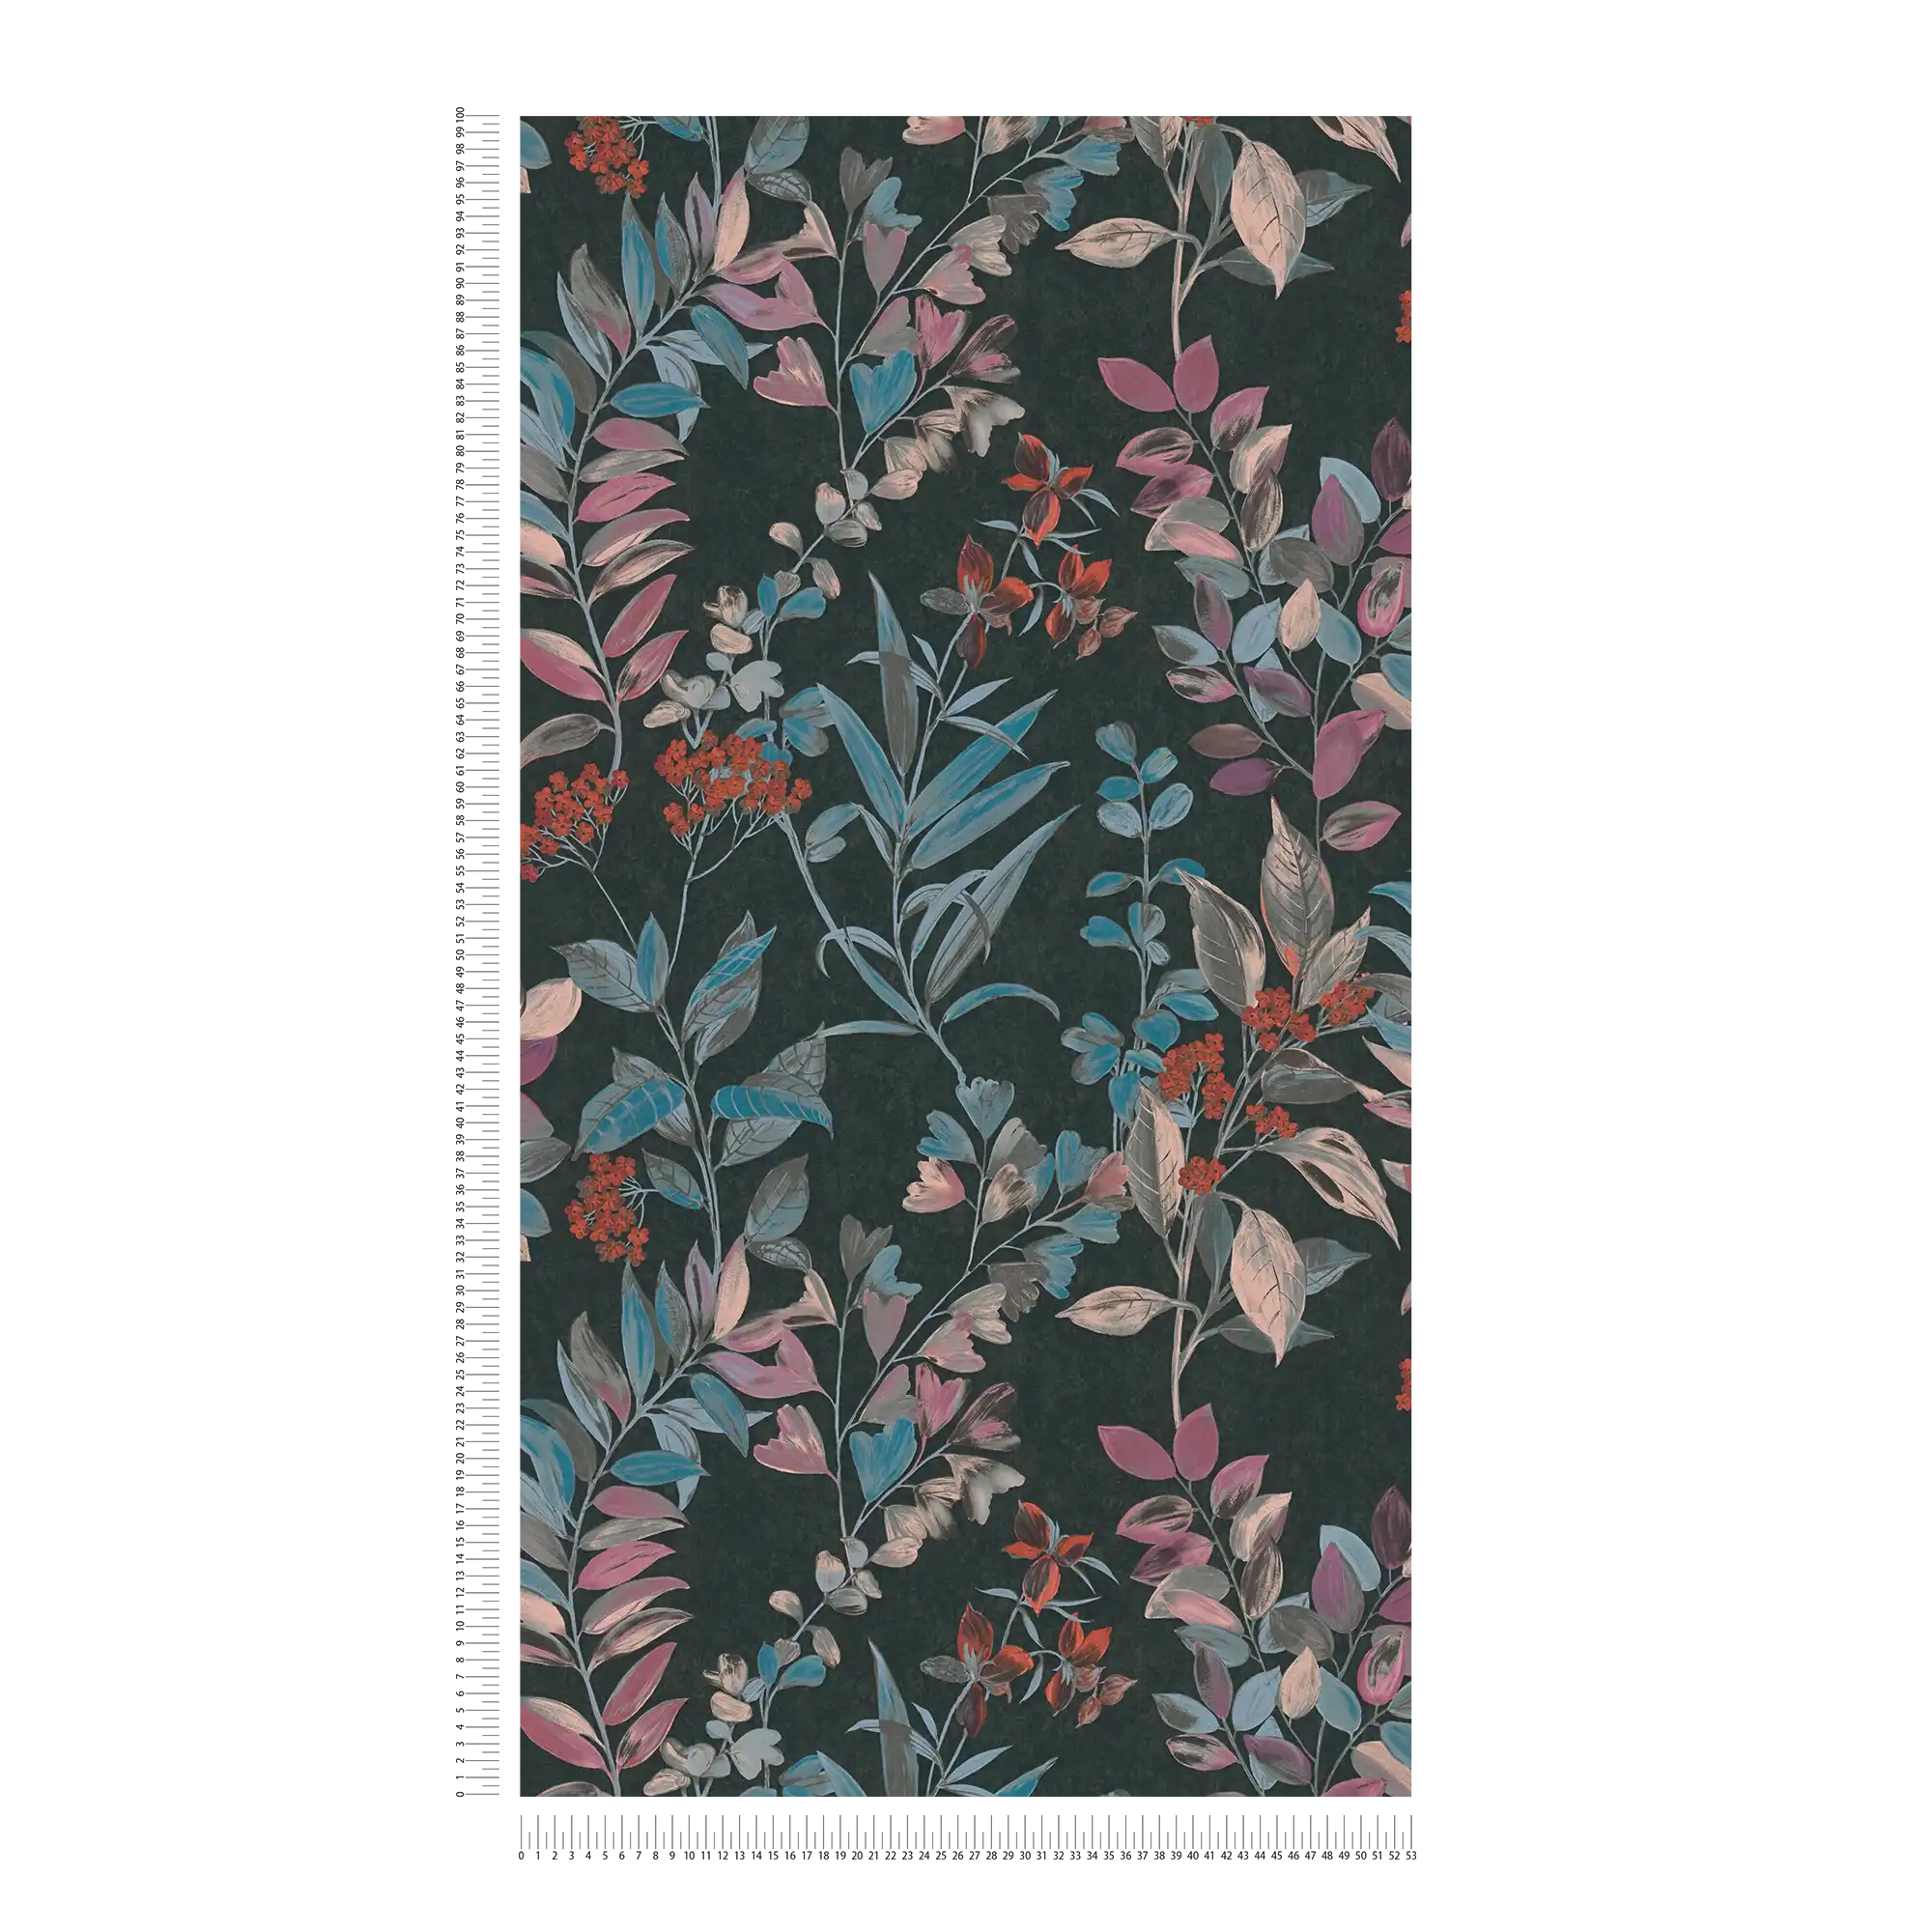             Papel pintado tejido-no tejido con motivos florales - multicolor, negro, azul
        